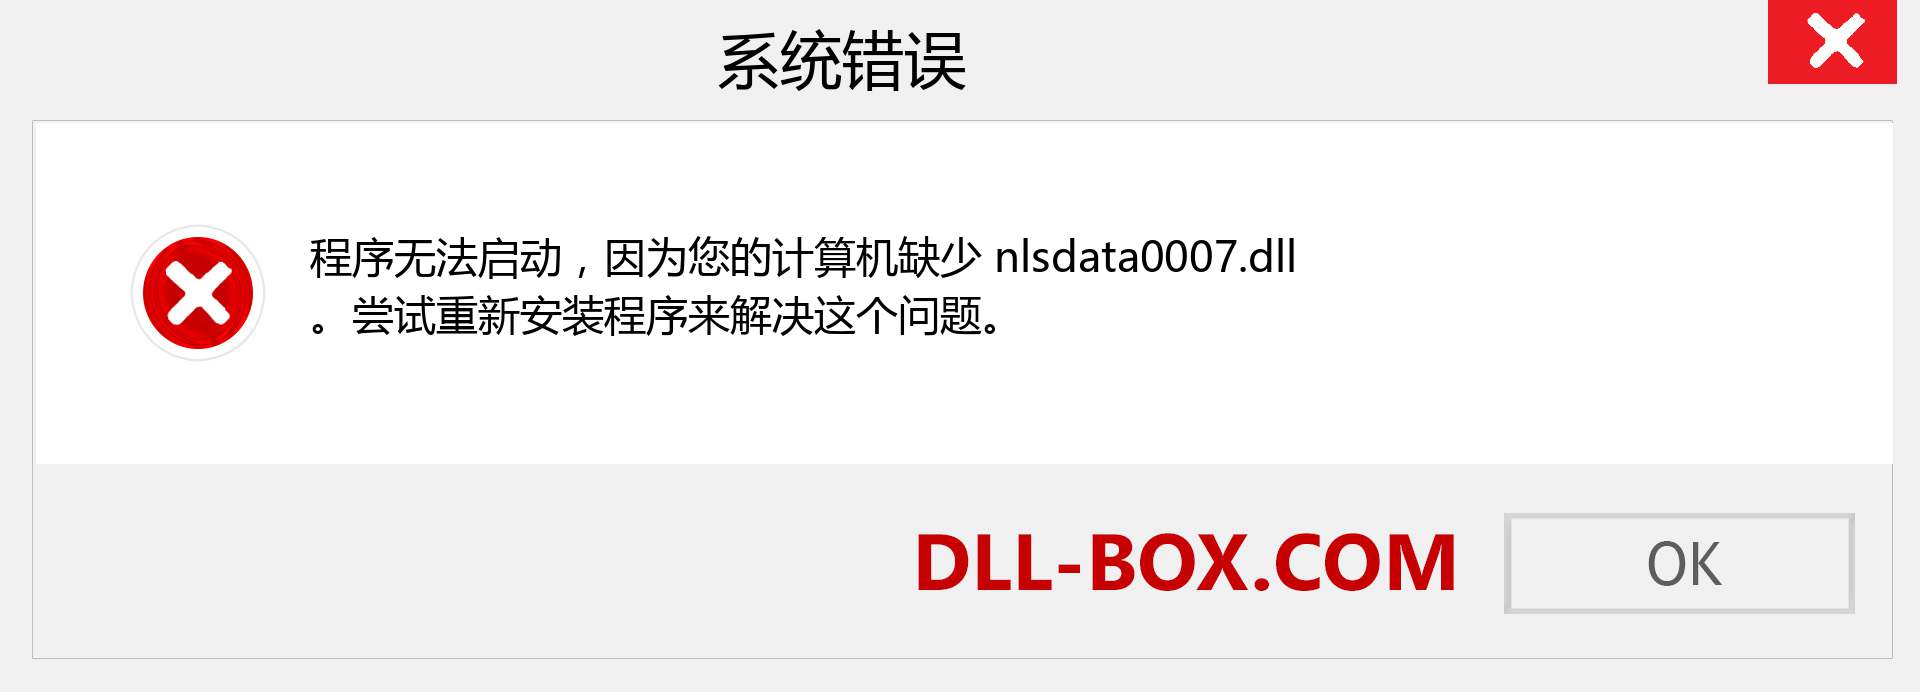 nlsdata0007.dll 文件丢失？。 适用于 Windows 7、8、10 的下载 - 修复 Windows、照片、图像上的 nlsdata0007 dll 丢失错误